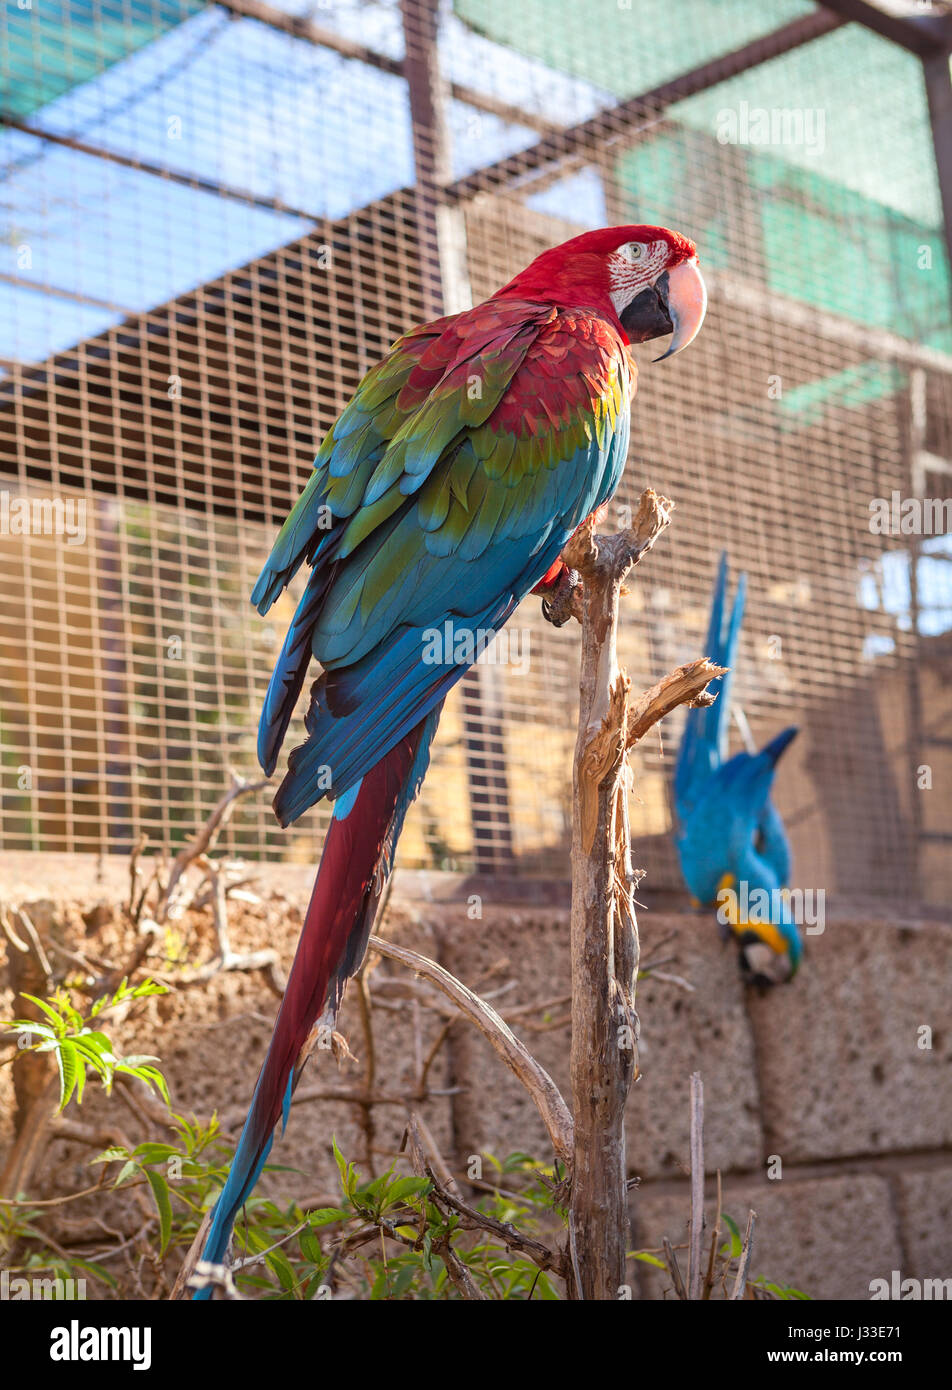 Offenen Käfig mit großen roten und blauen Flügel Papageien, Teneriffa, Spanien Stockfoto